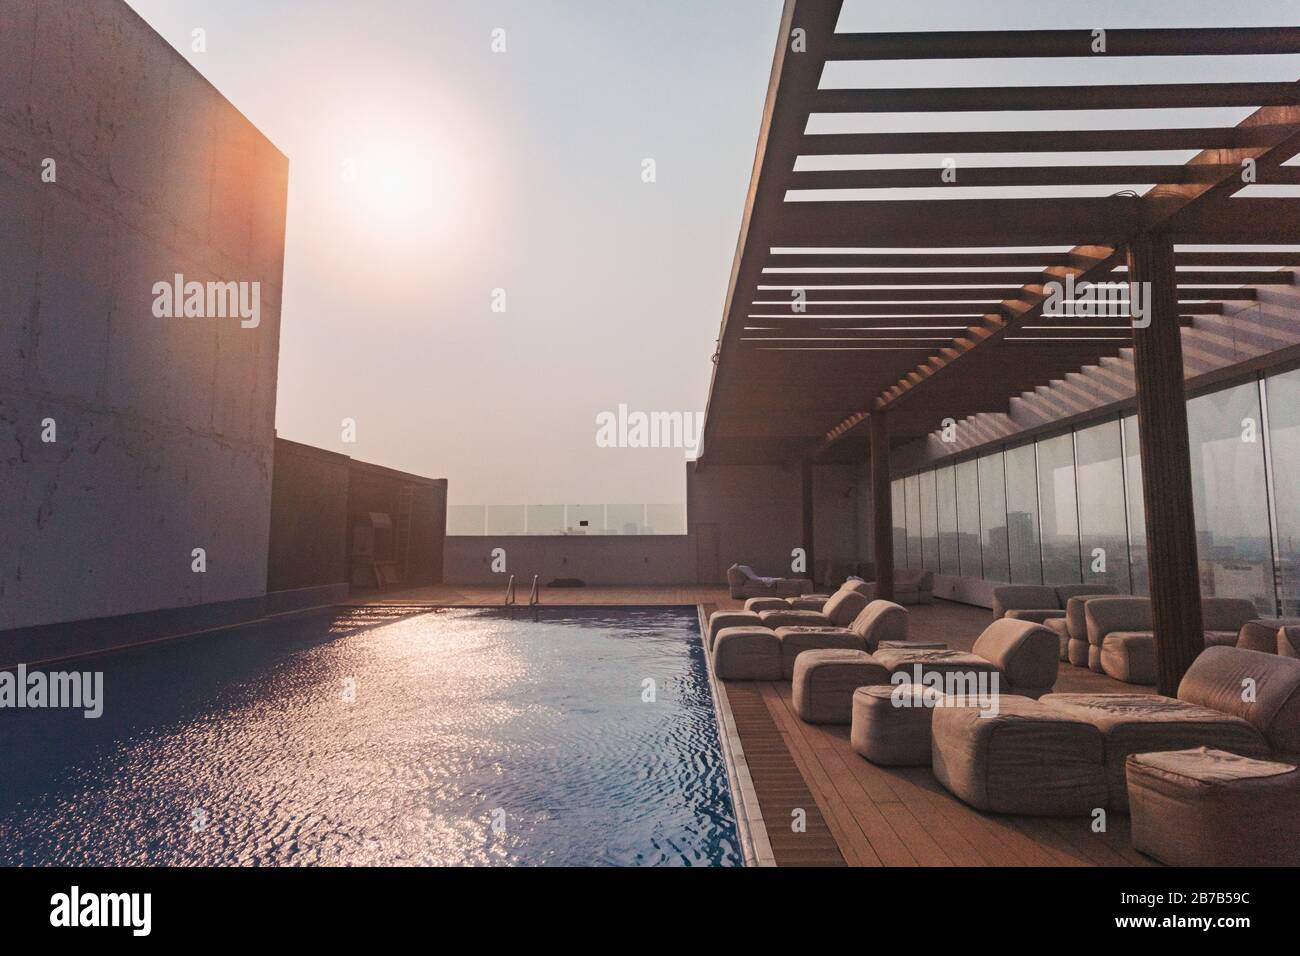 Una piscina sul tetto e sedie a sdraio in un pomeriggio caldo a Doha, Qatar Foto Stock